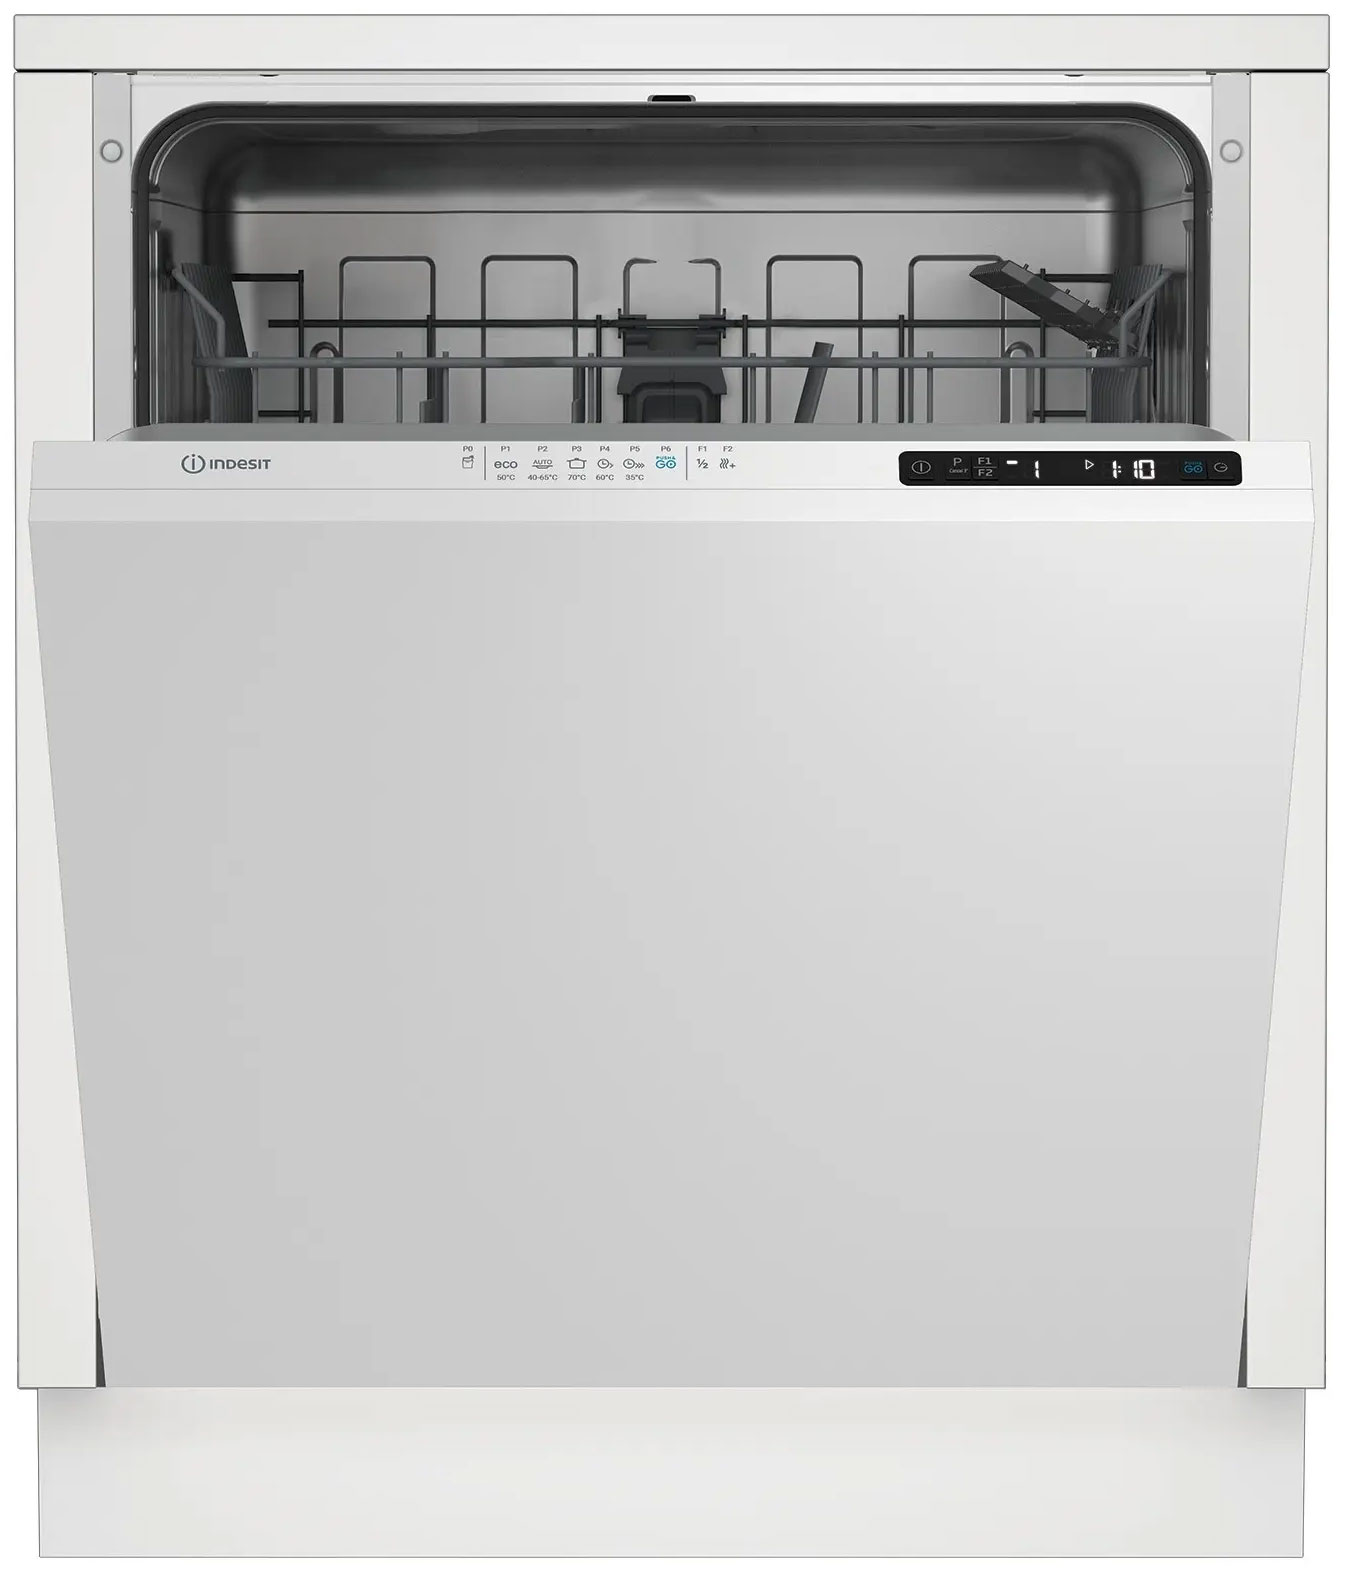 Встраиваемая посудомоечная машина Indesit DI 4C68 AE встраиваемая посудомоечная машина indesit di 3c49 b